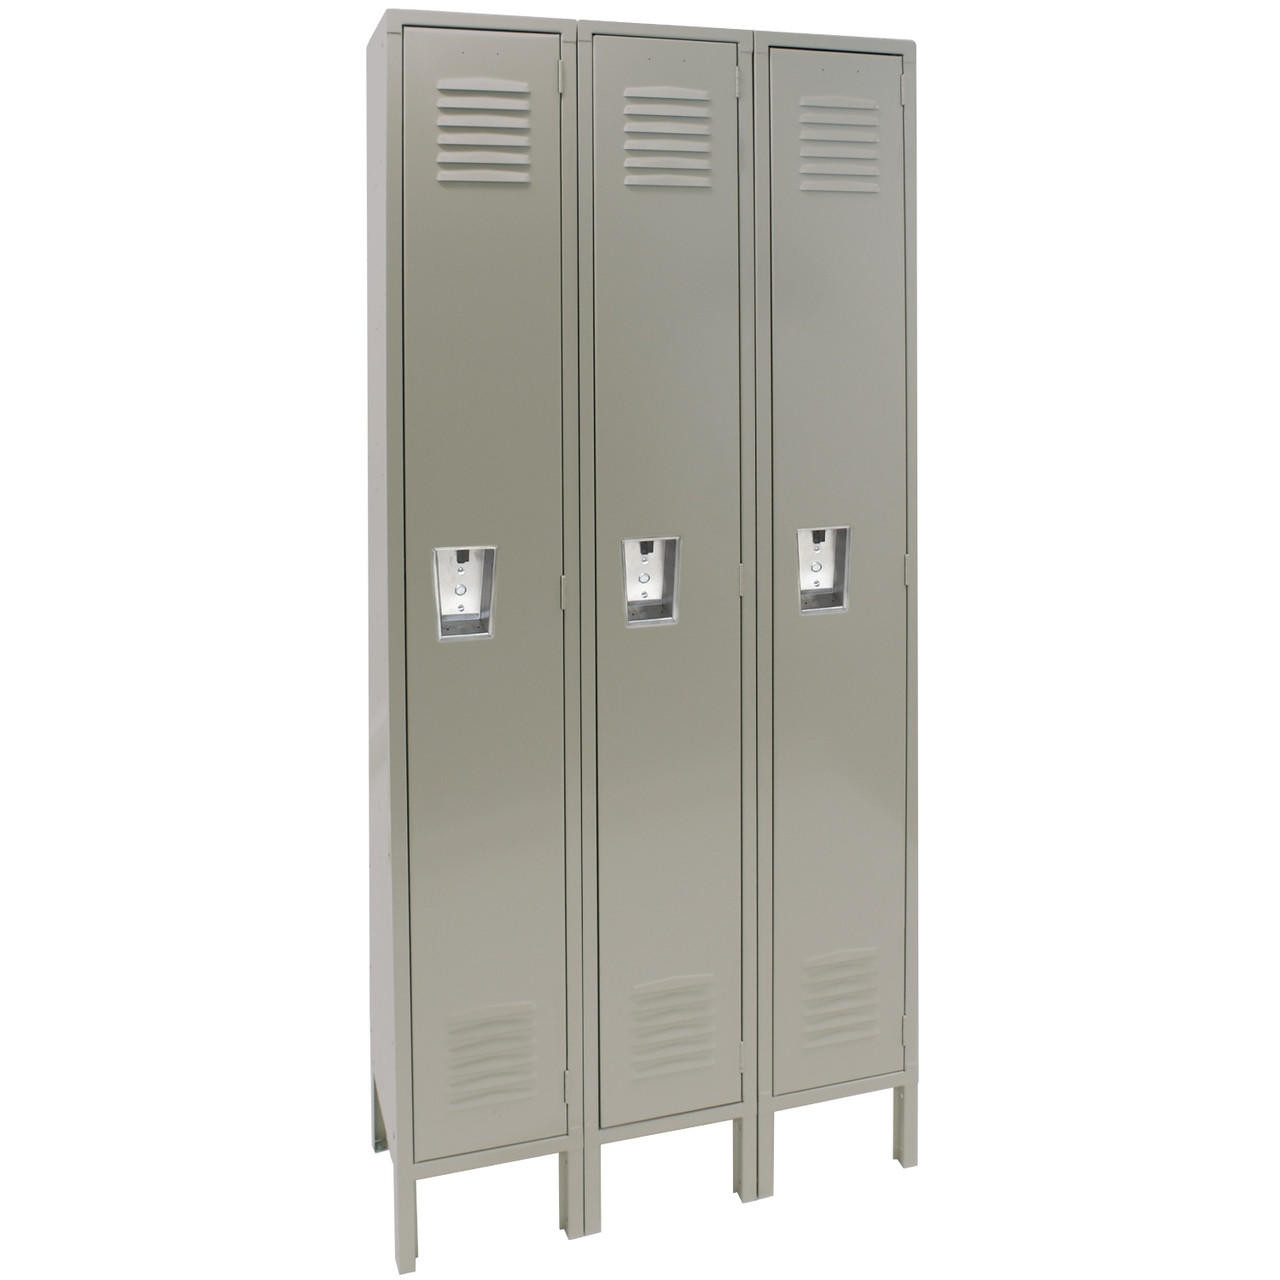 single-tier-metal-locker-15w-x-18d-x-78h-3-wide-unassembled-dove-gray/